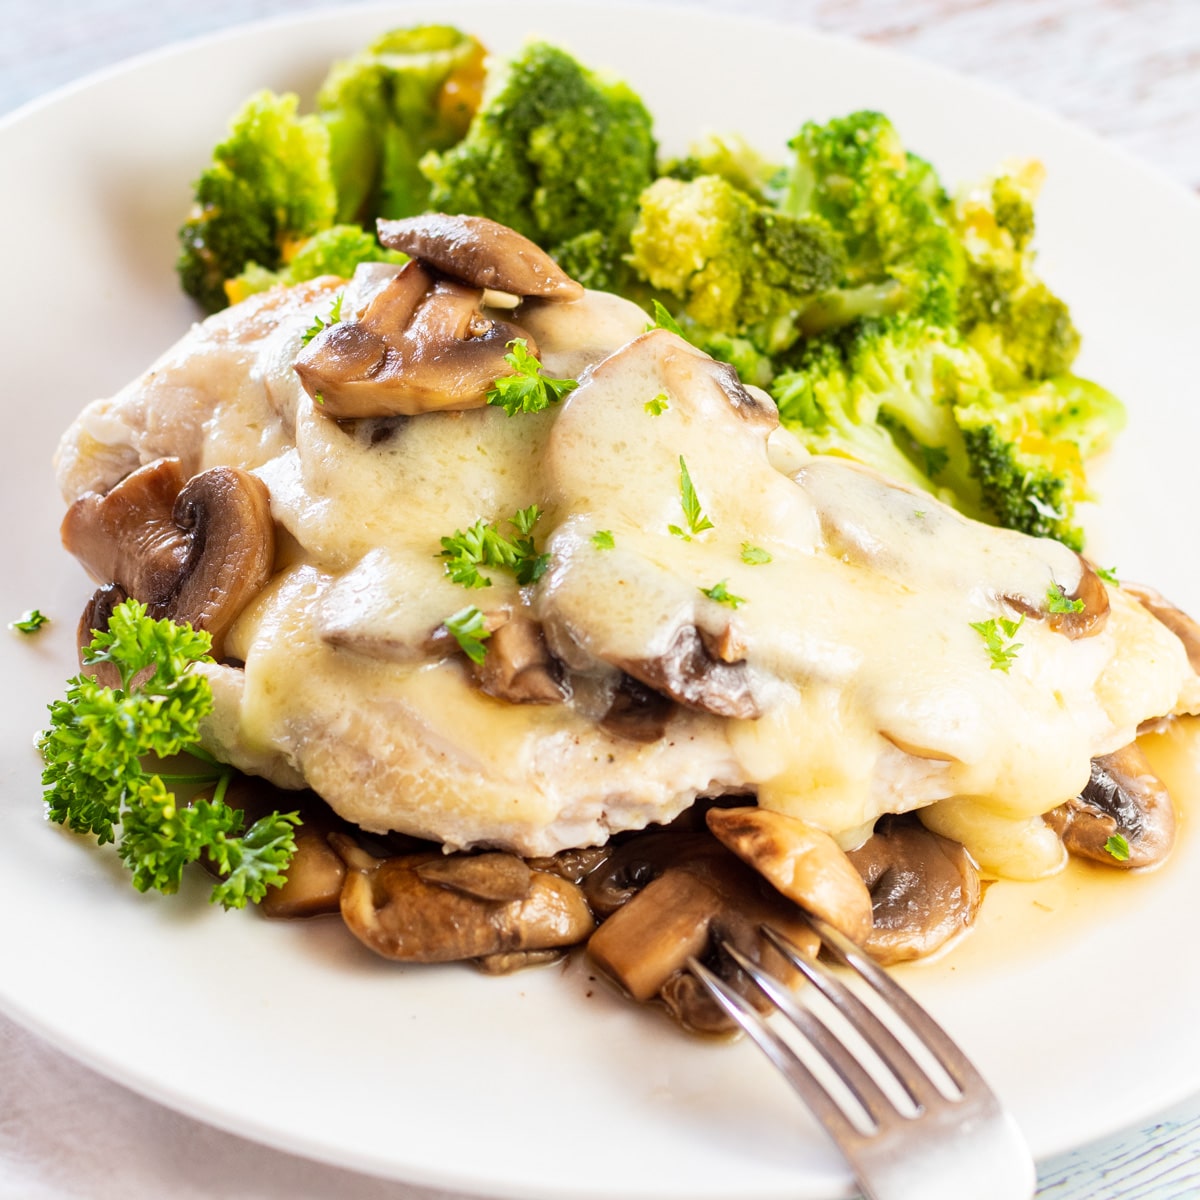 Il pollo svizzero tenero e gustoso ai funghi viene servito su più funghi saltati su un piatto bianco.